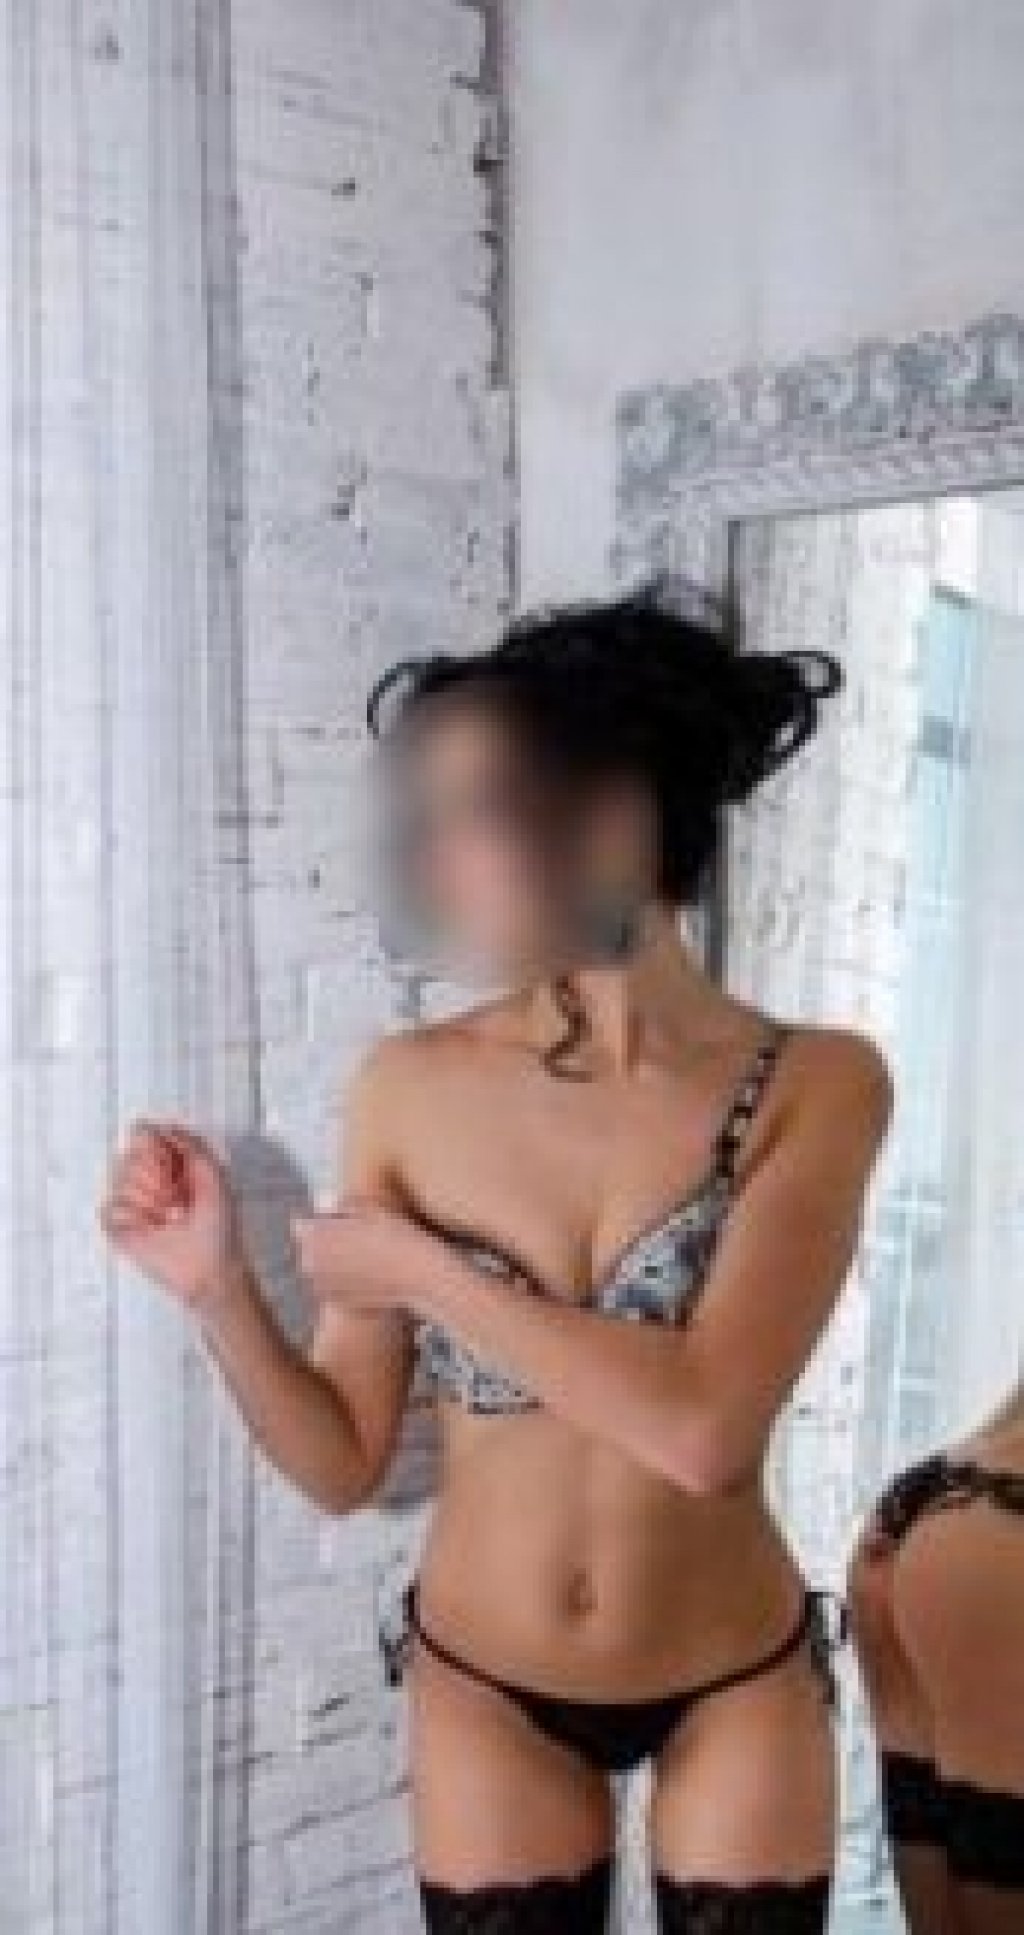 Таня: Проститутка-индивидуалка в Хабаровске